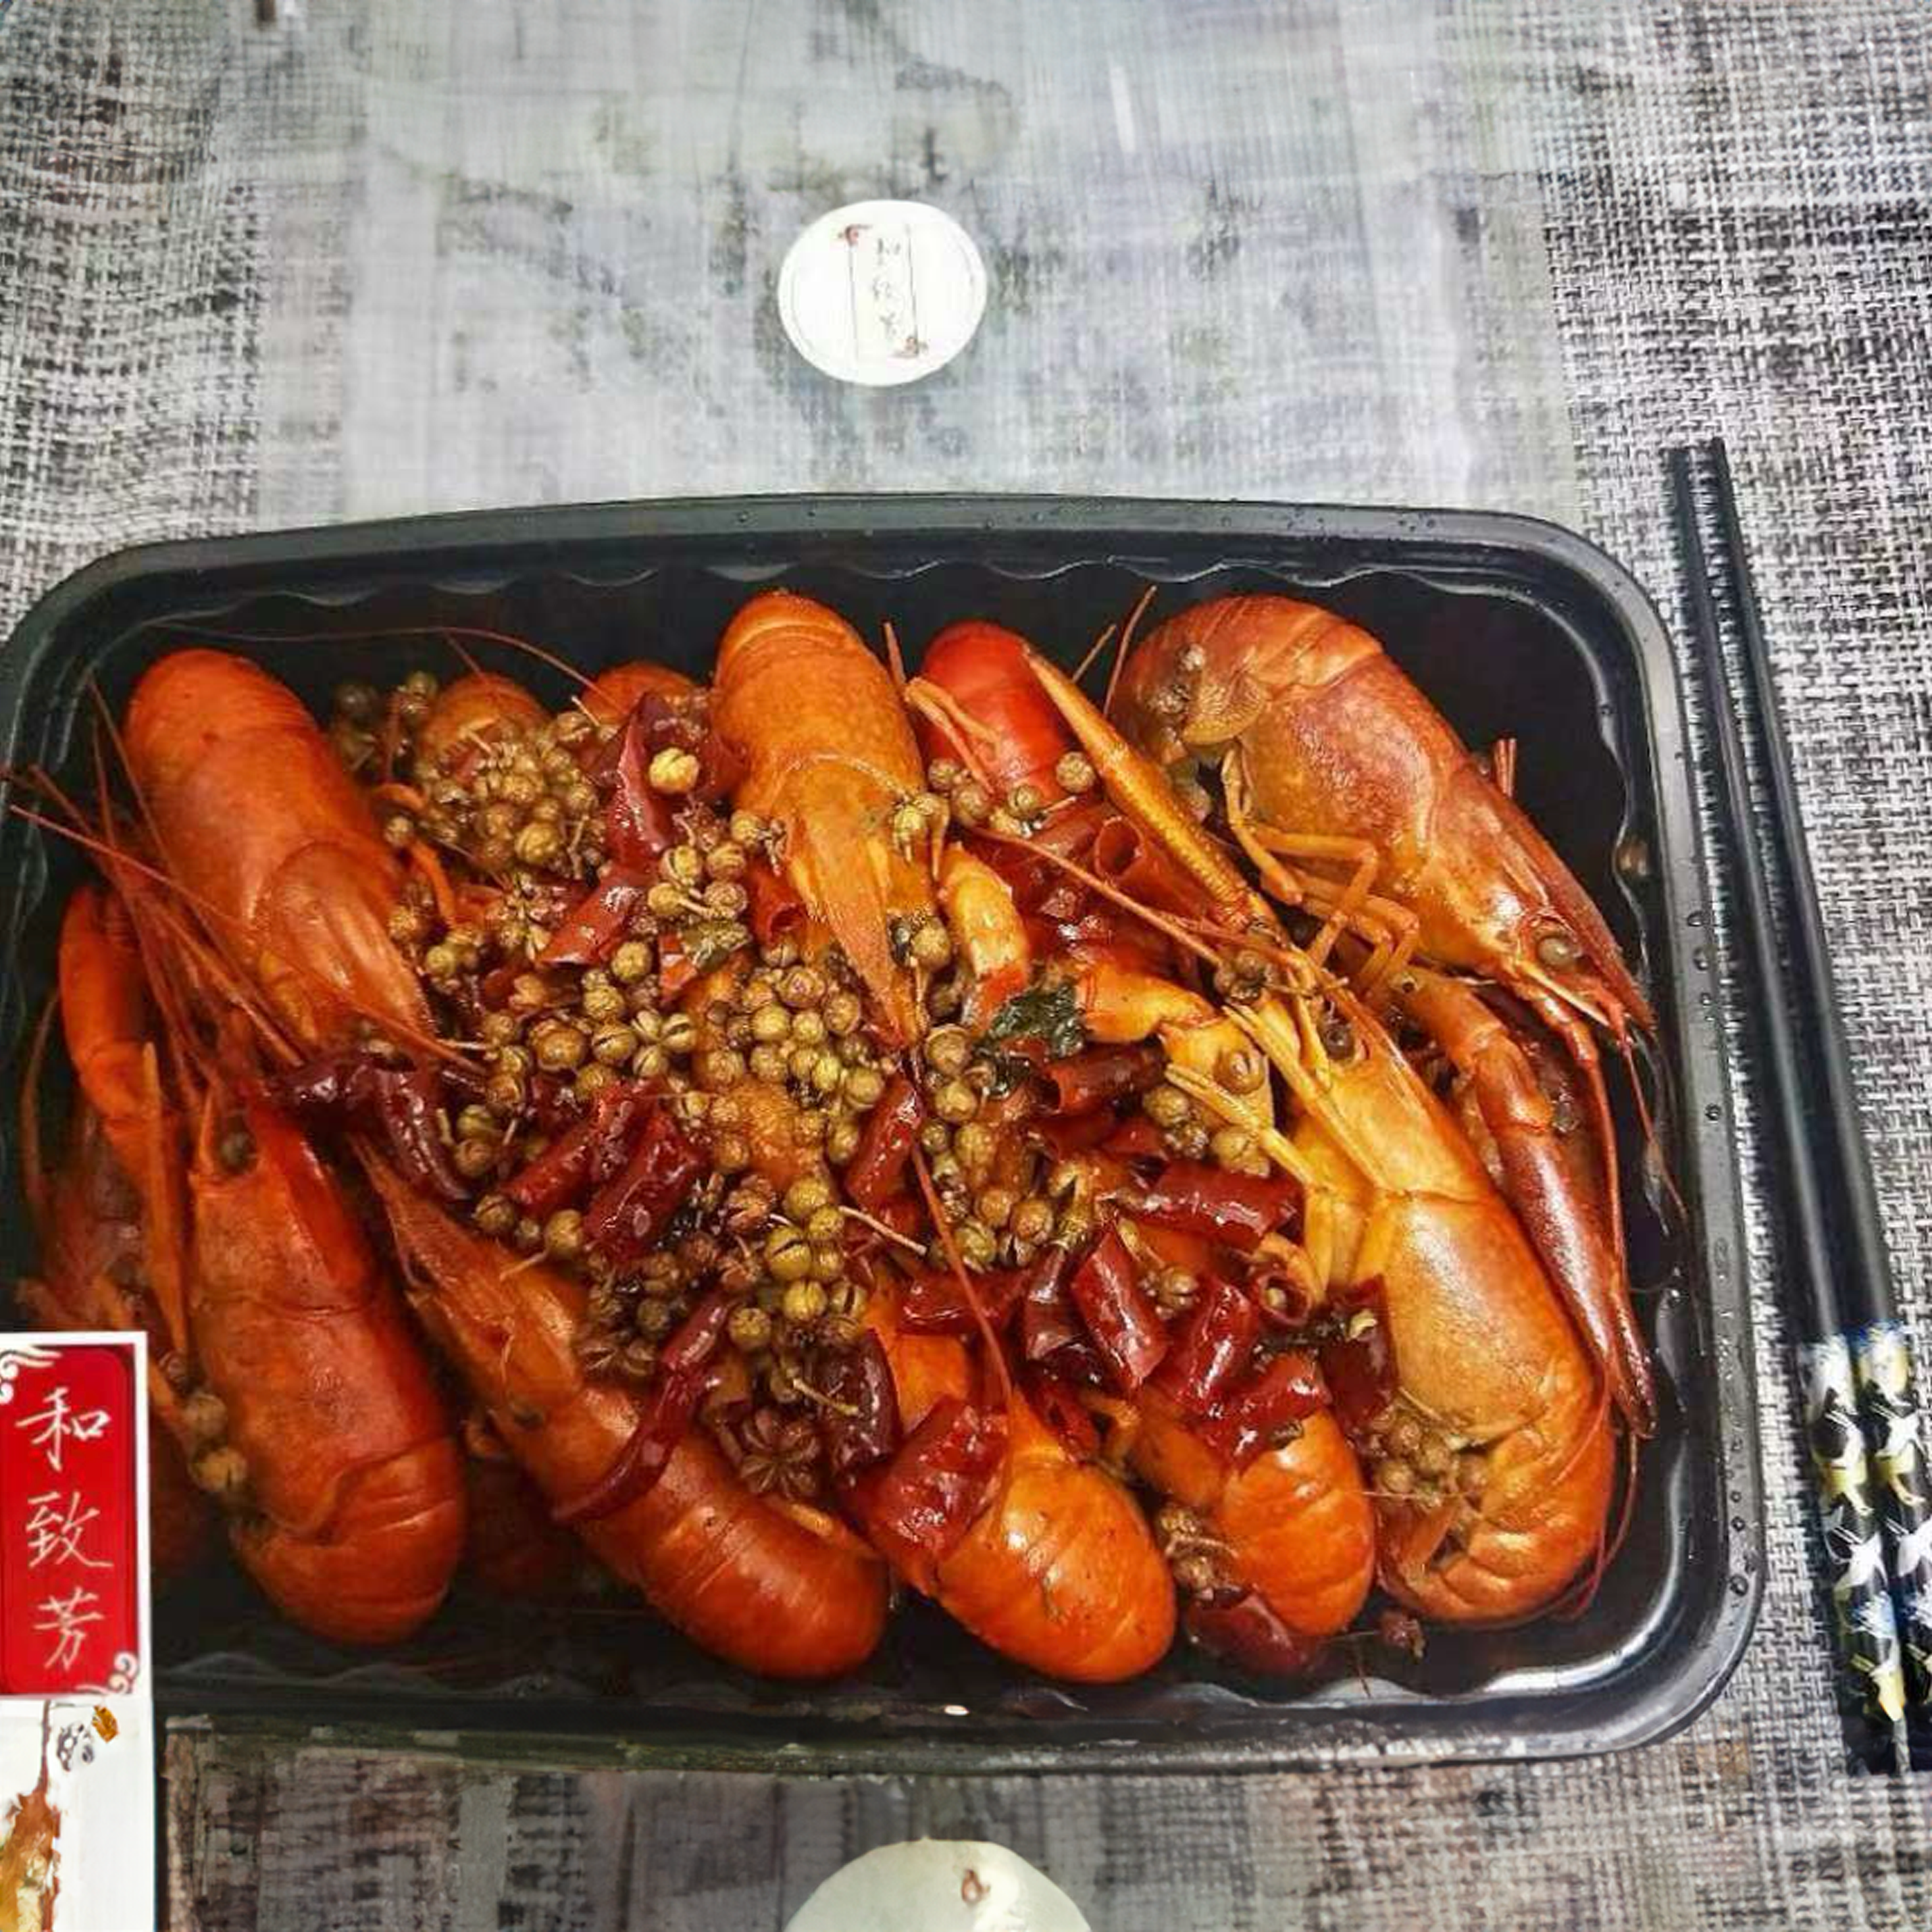 Crayfish Family Meals / 麻辣小龙虾全家桶 28pcs± (400g±)